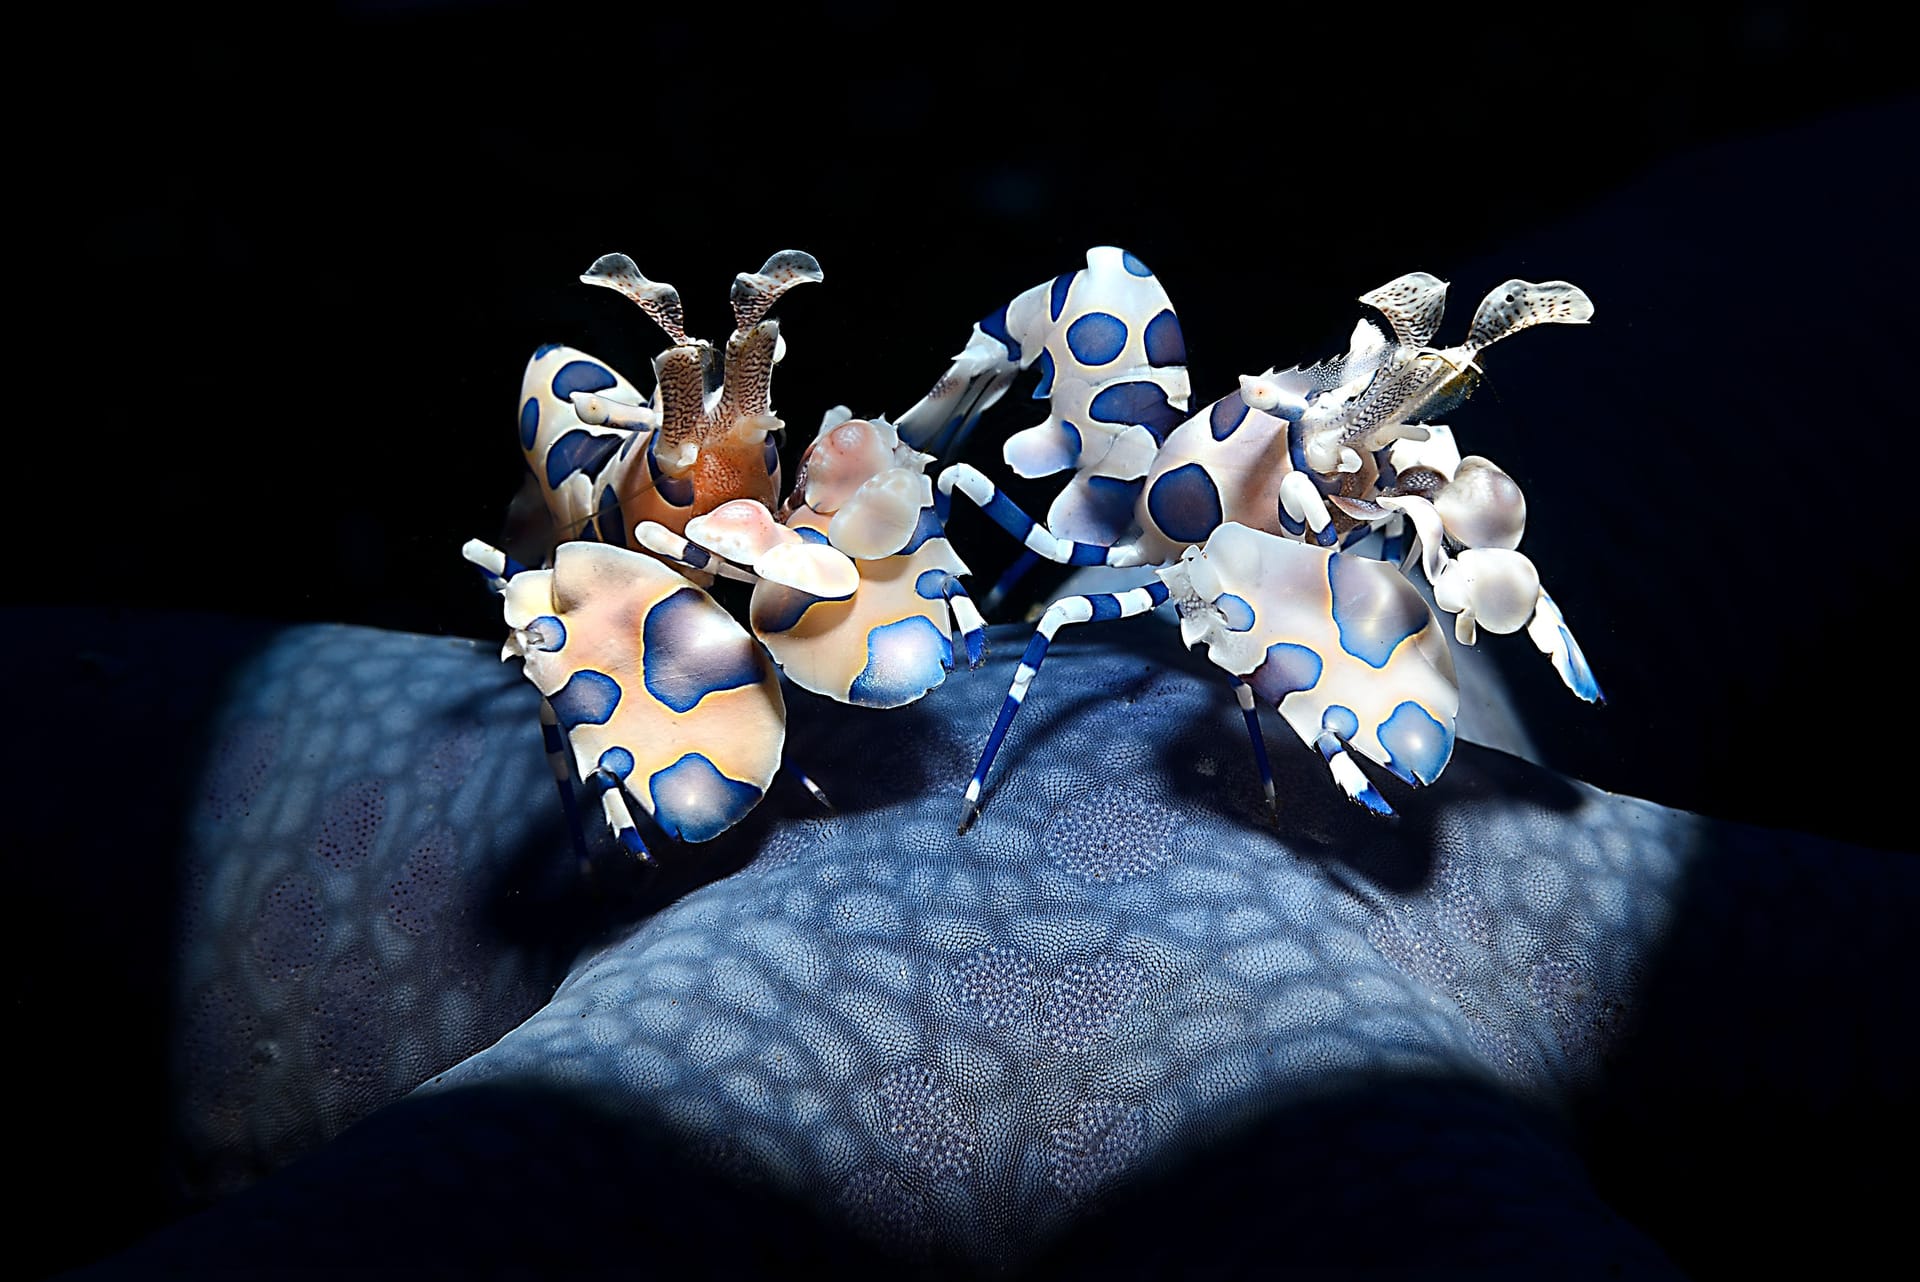 Zwei Harlekingarnelen: Adriano Morettin aus Italien gewann mit diesem Bild die Kategorie "Unterwasser".